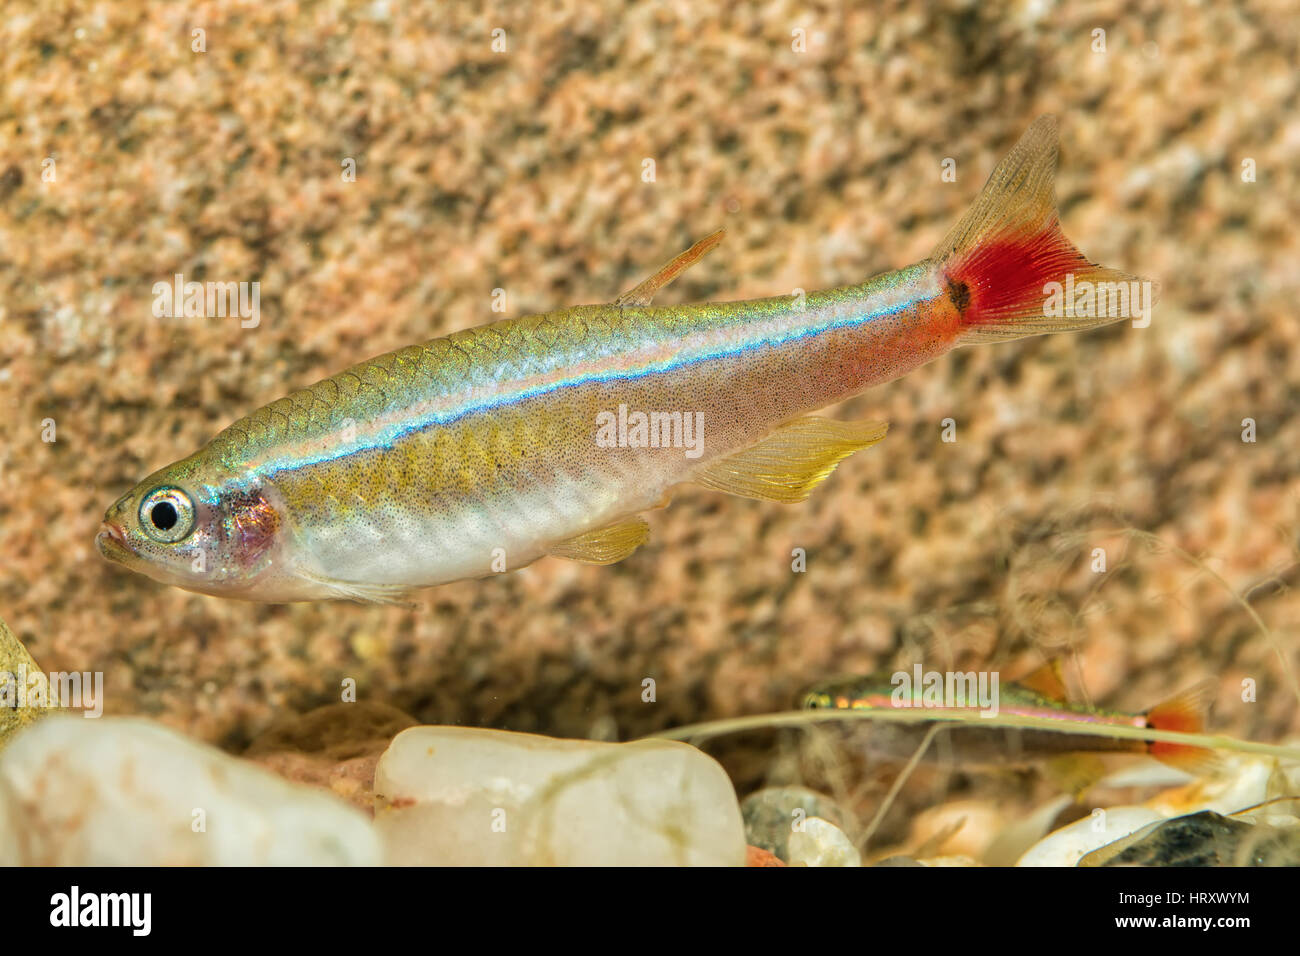 Portrait of freshwater barb fish (Tanichthys albonubes) in aquarium Stock Photo